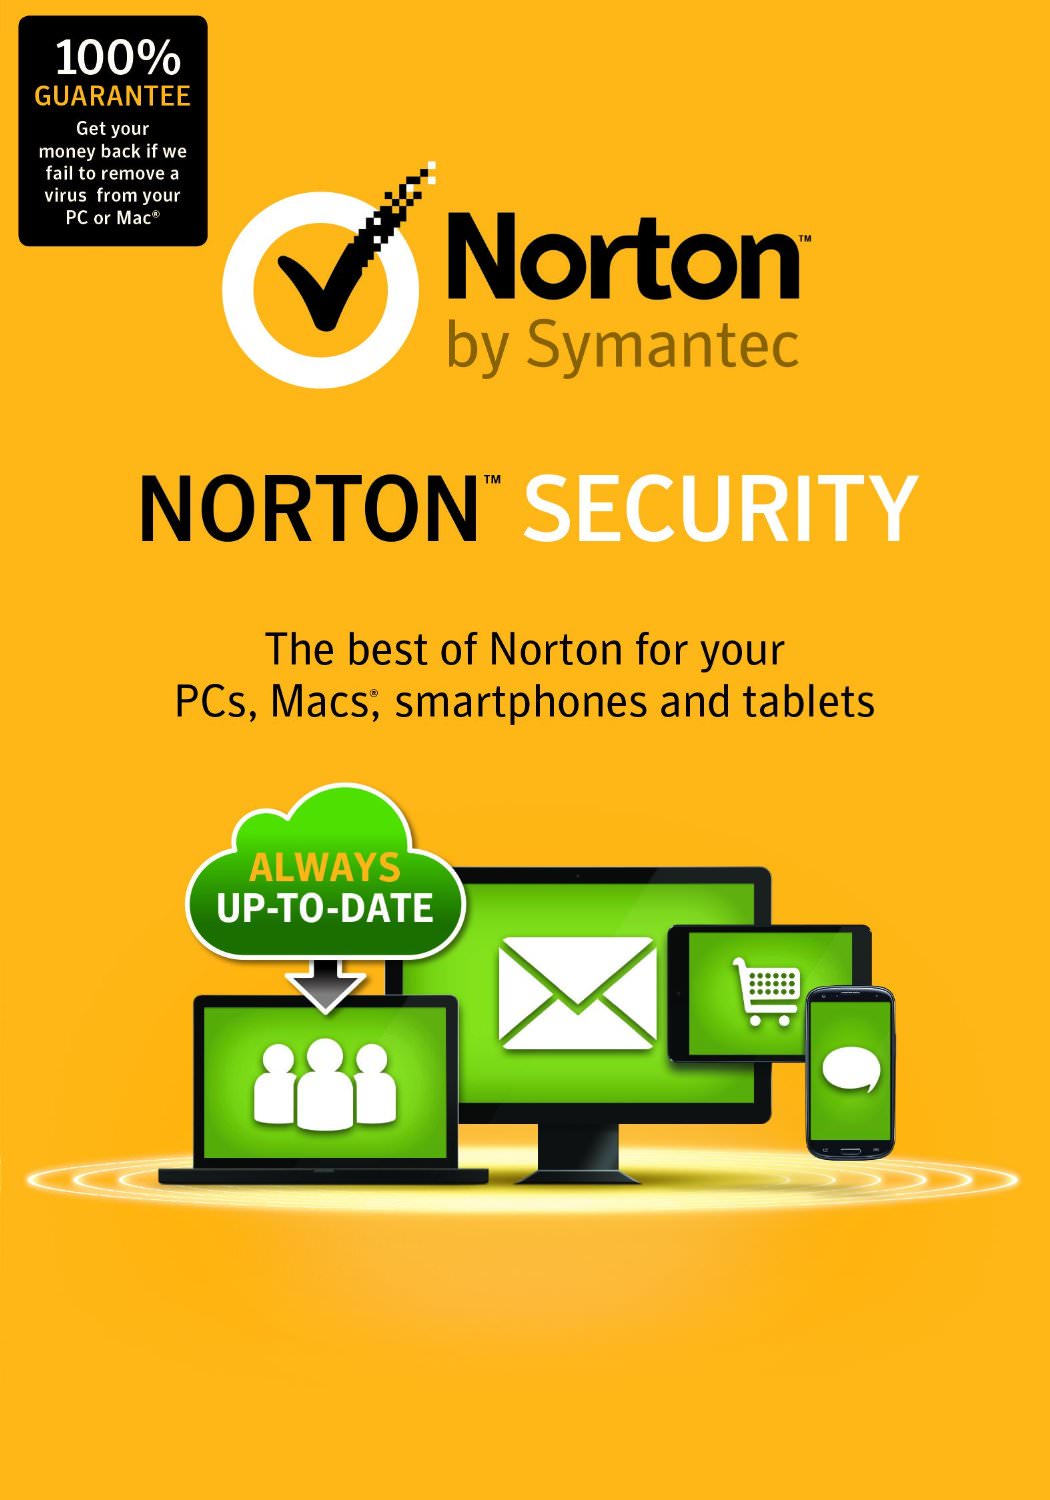 acquisisci gratuitamente la versione di prova di Norton Antivirus